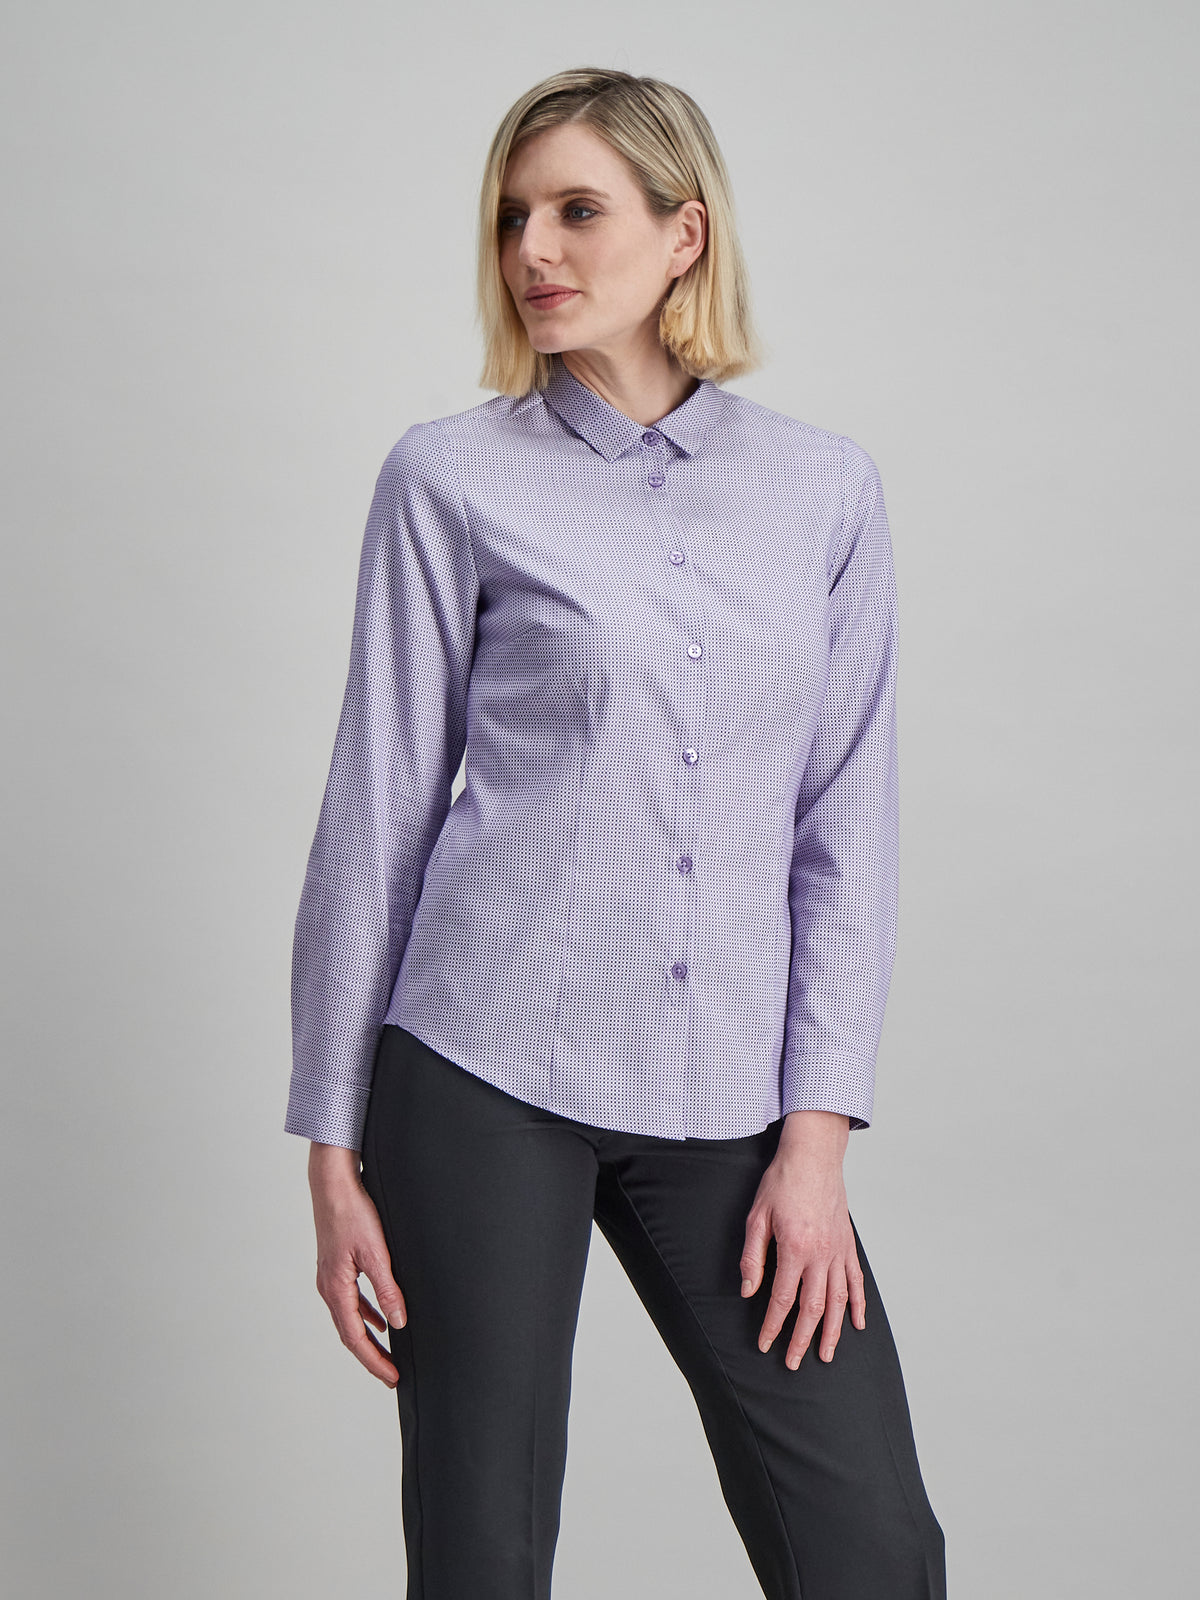 Karabo cotton  shirt - purple